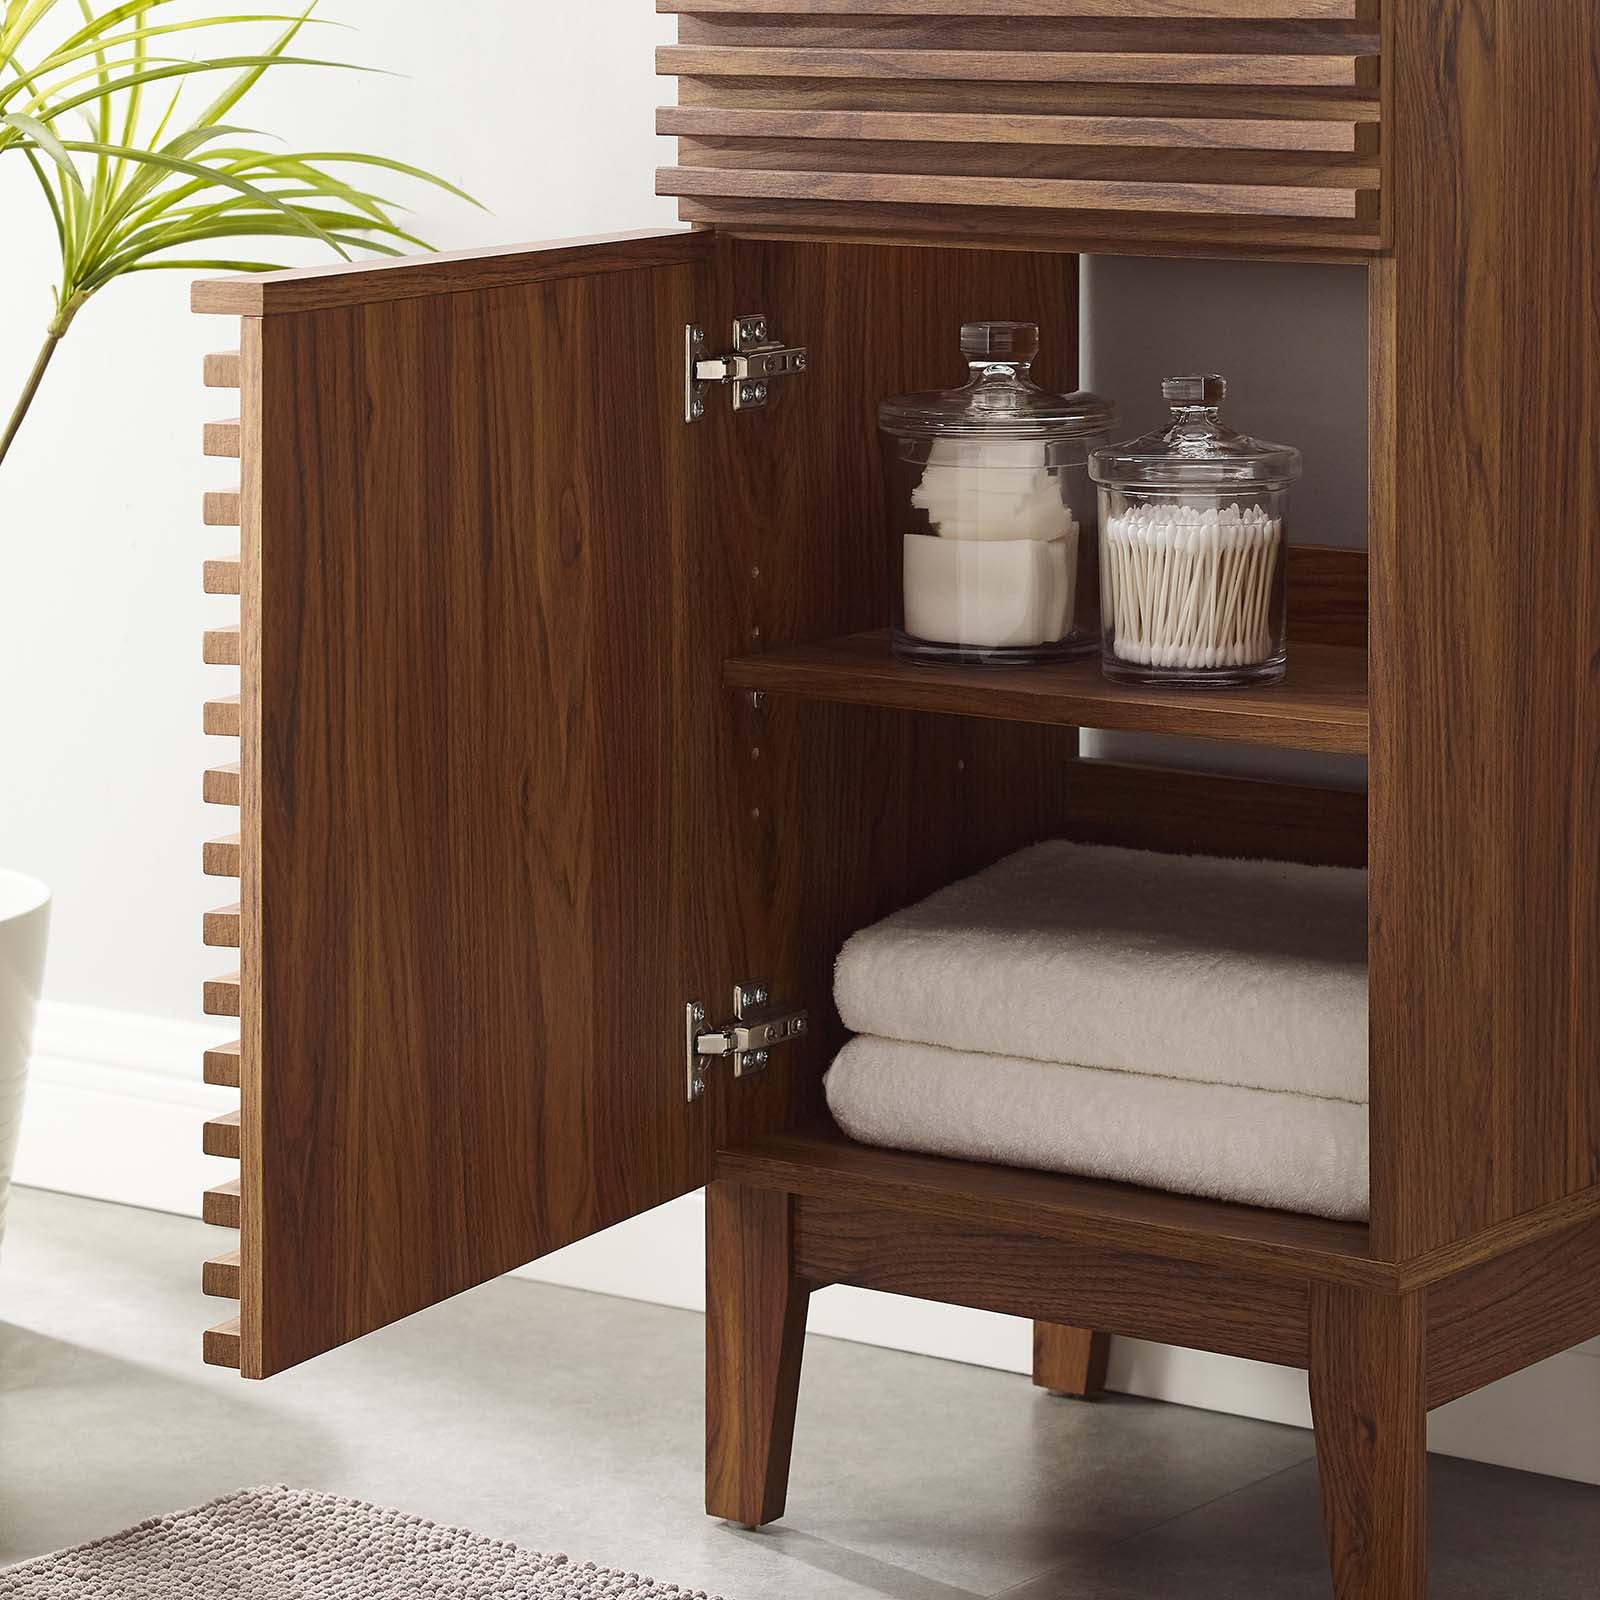 Render 18" Bathroom Vanity Cabinet (Sink Basin Not Included) - East Shore Modern Home Furnishings